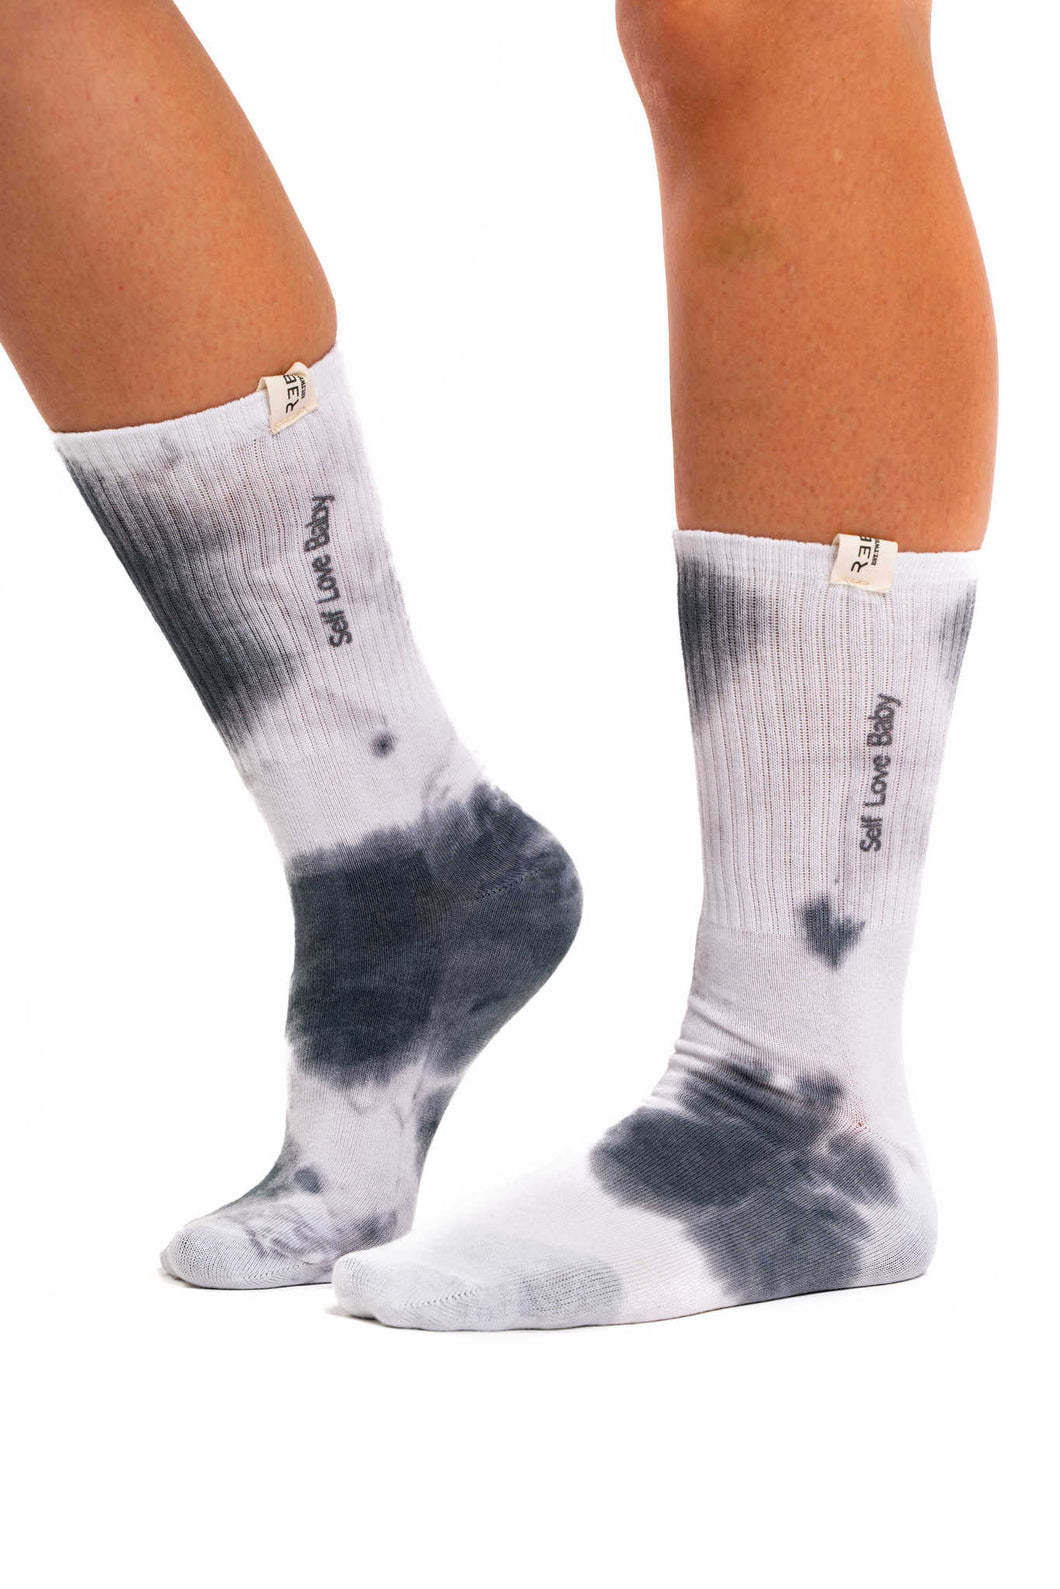 Ying Yang Socks